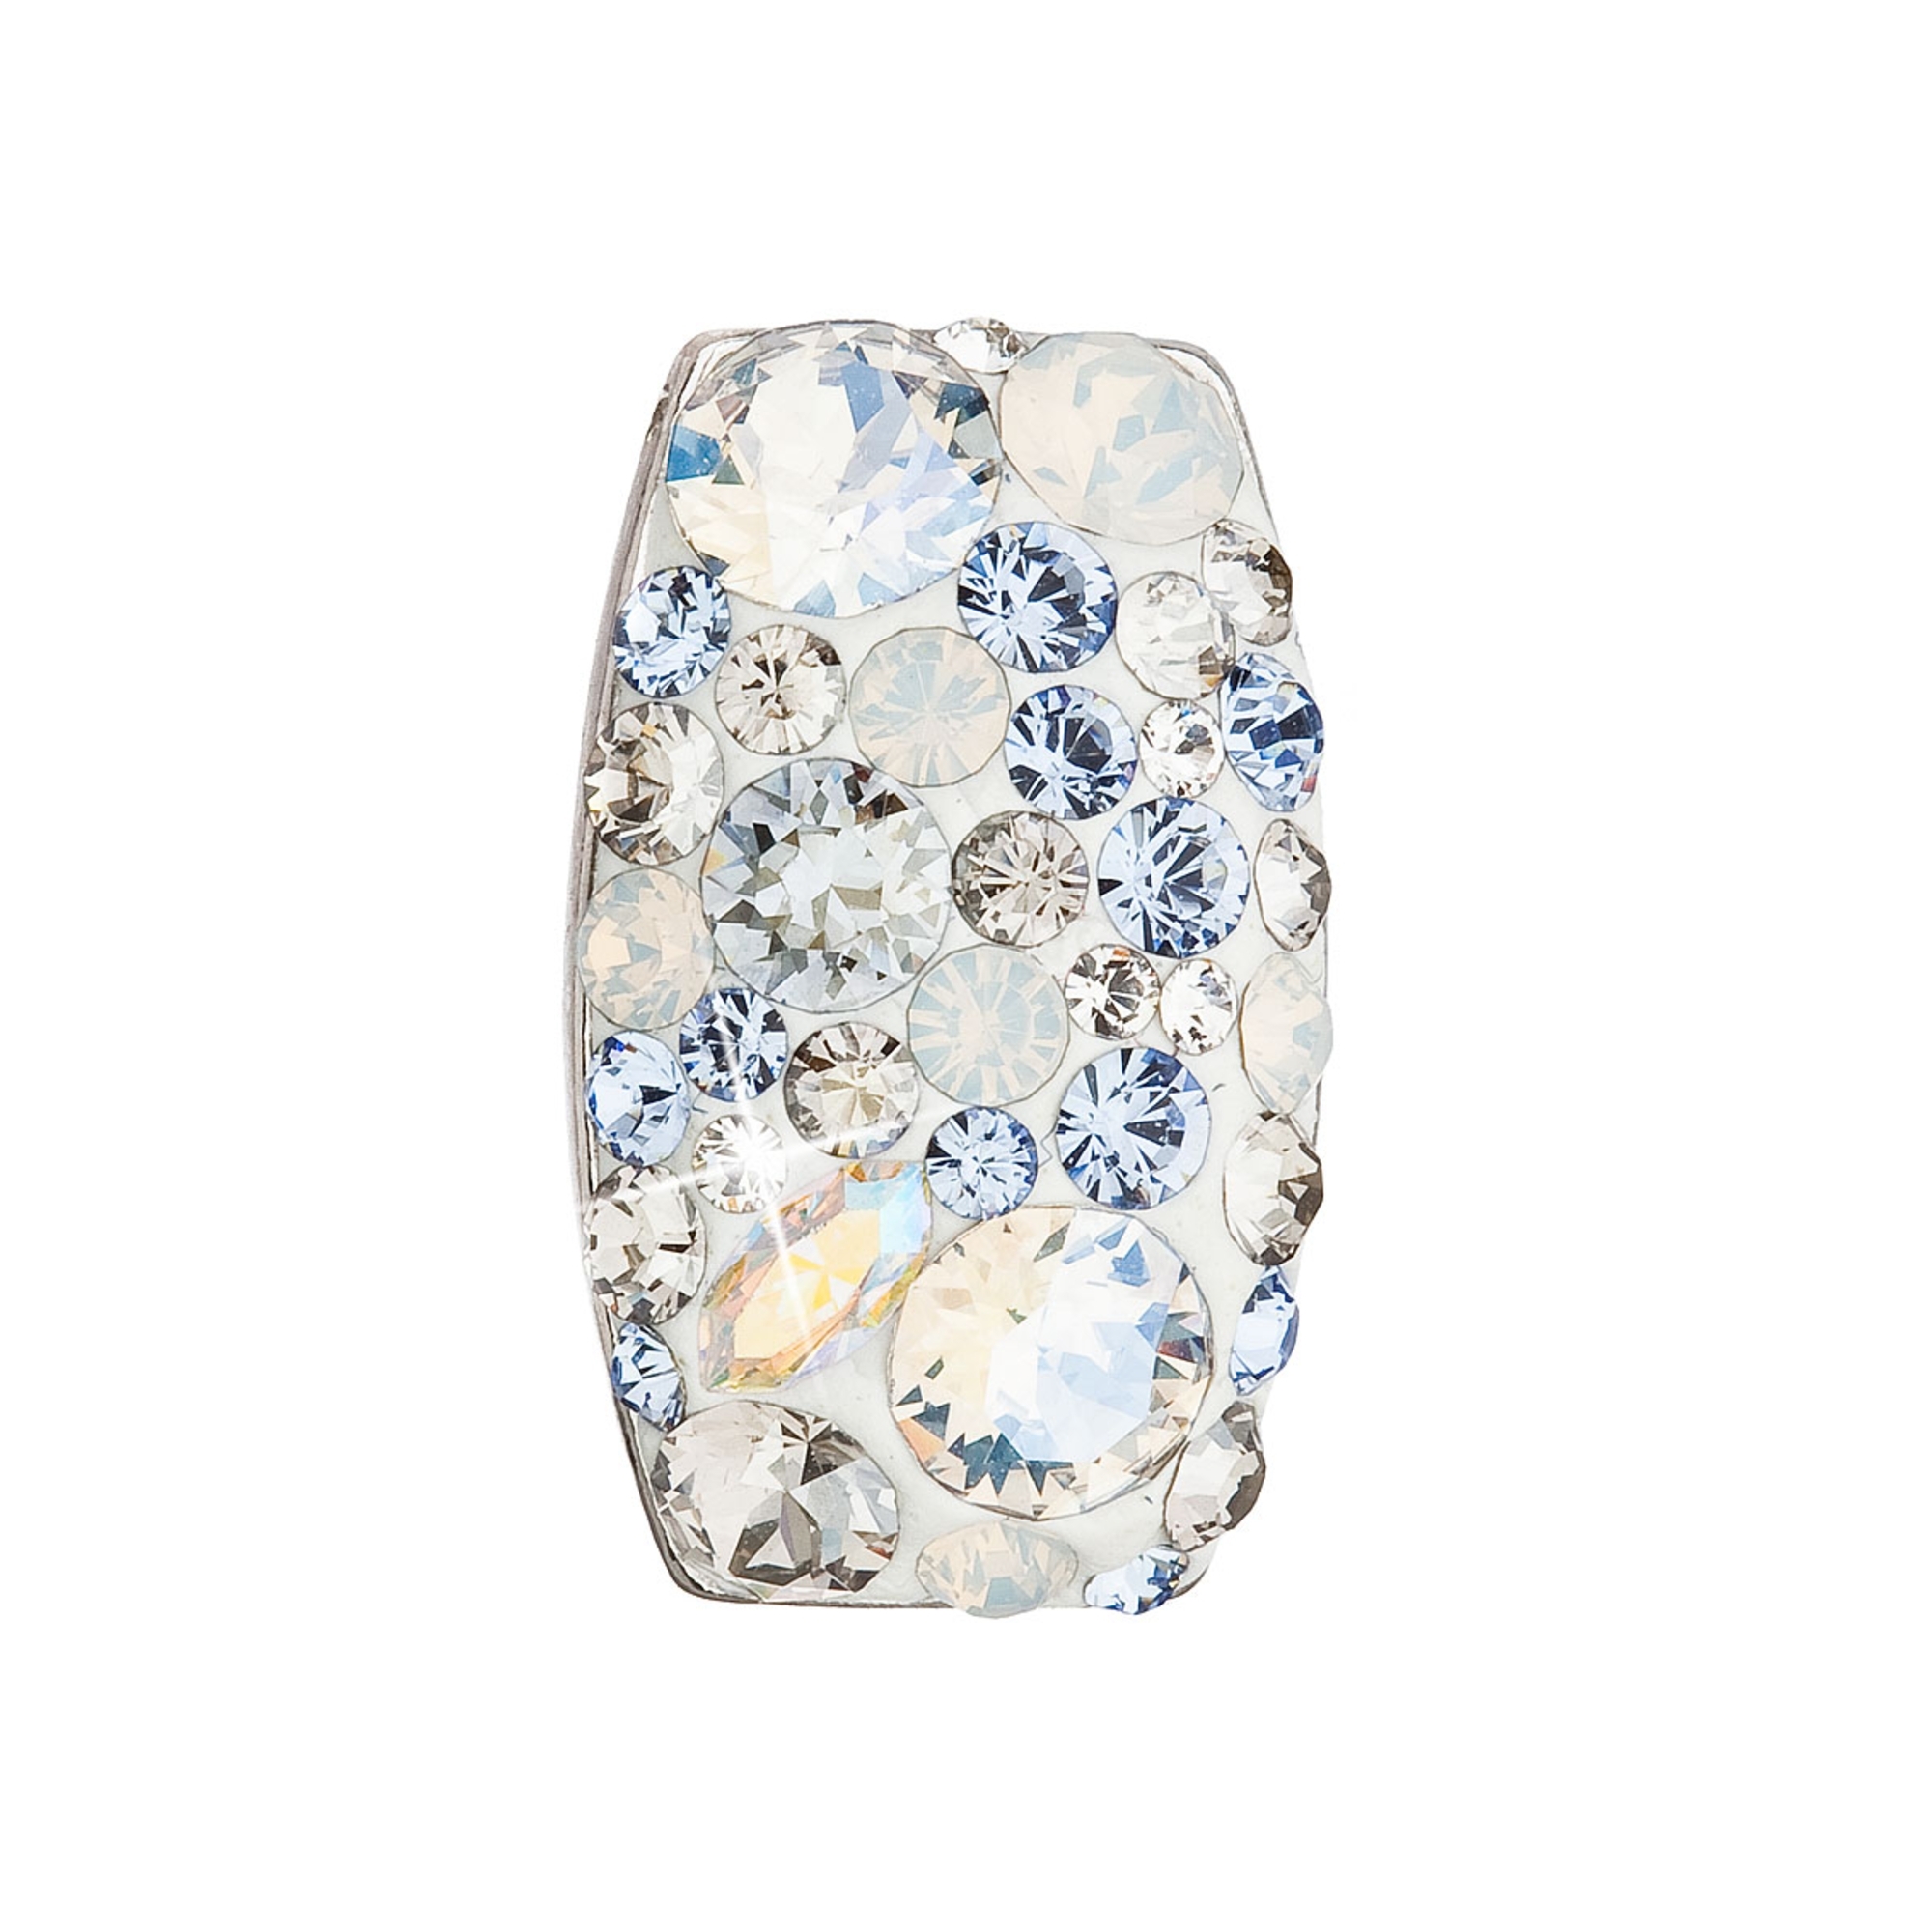 Strieborný prívesok s kryštálom Crystals from Swarovski ®, Light Sapphire